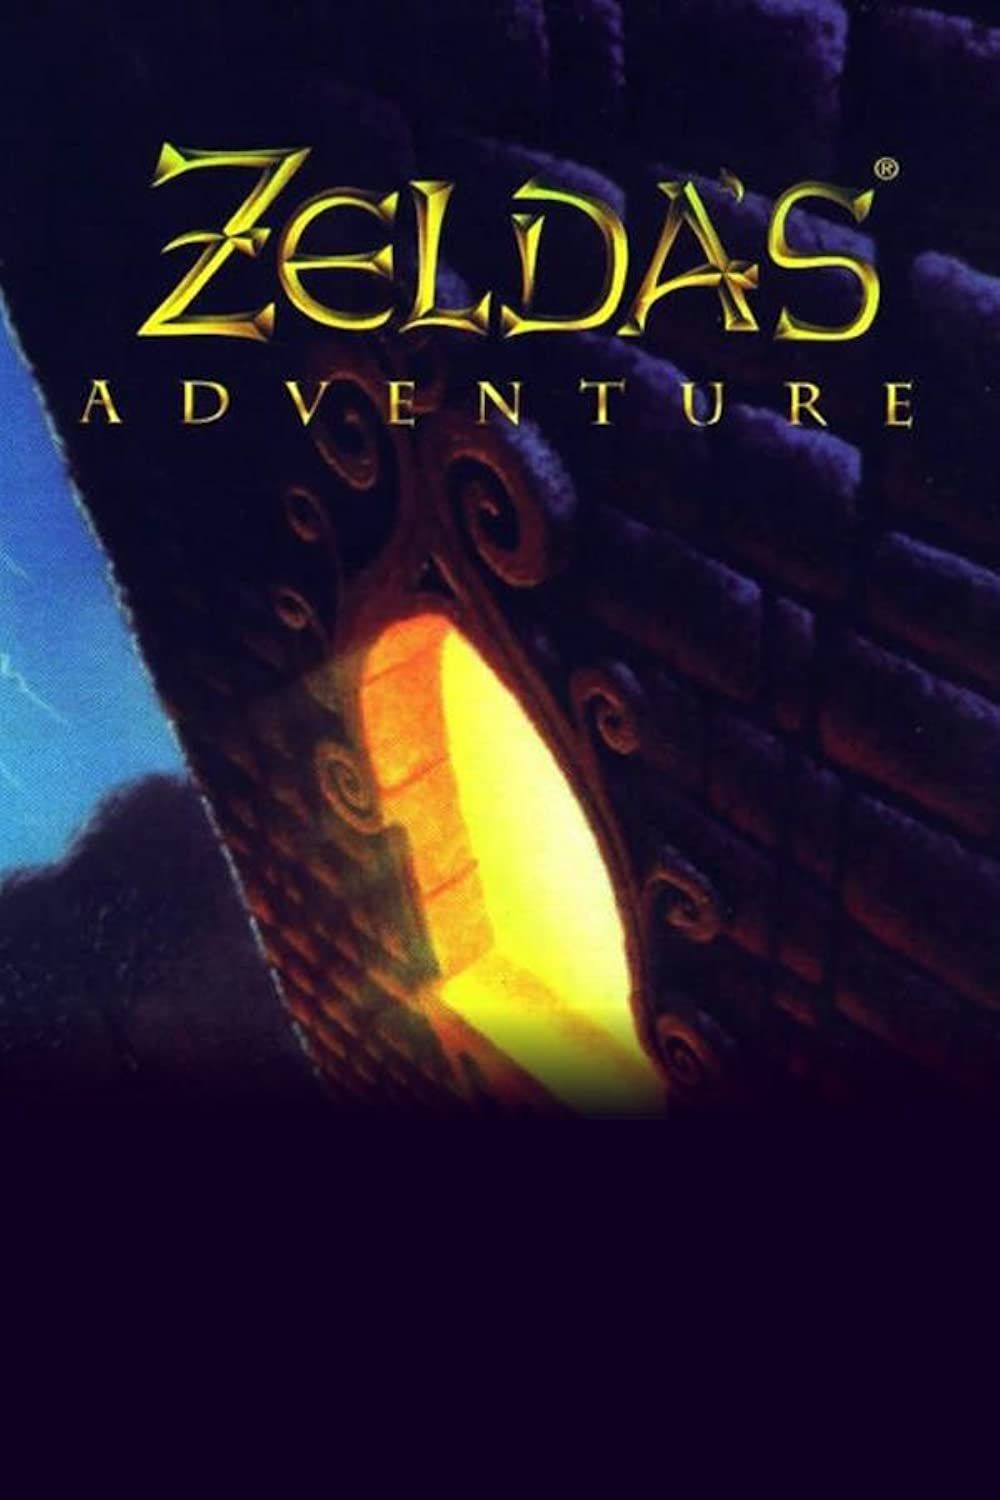 Arte da caixa de Zelda's Adventure, um castelo com uma janela brilhante